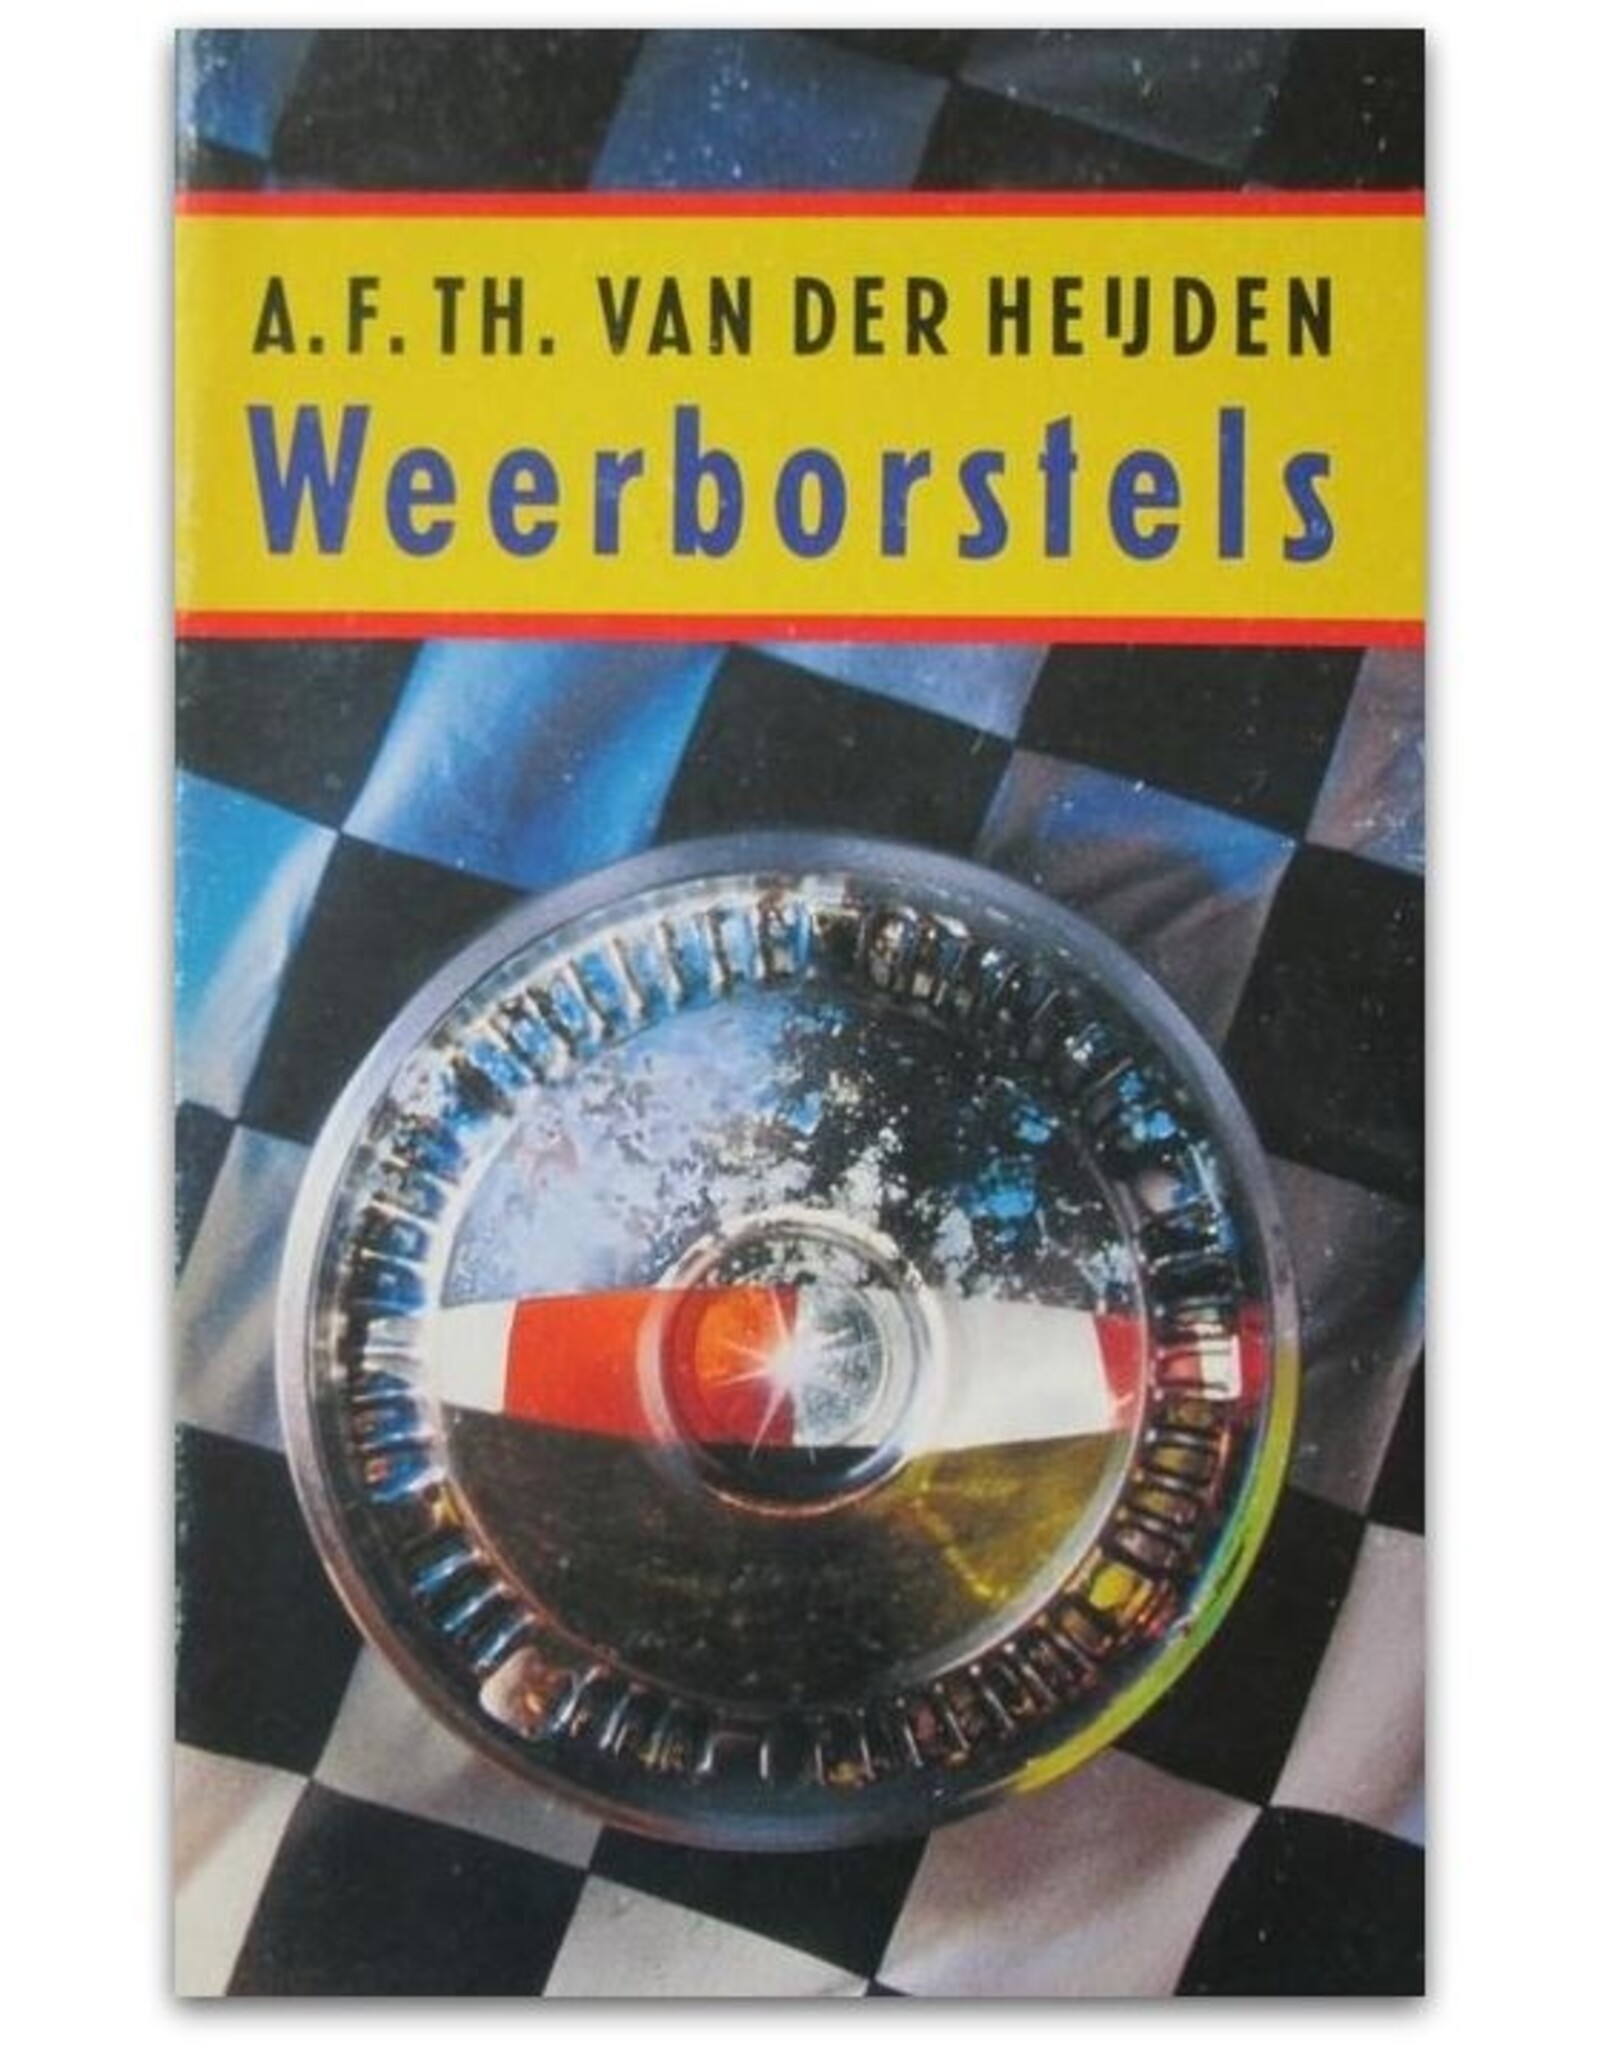 A.F.Th. van der Heijden - Weerborstels. De tandeloze tijd: Een intermezzo